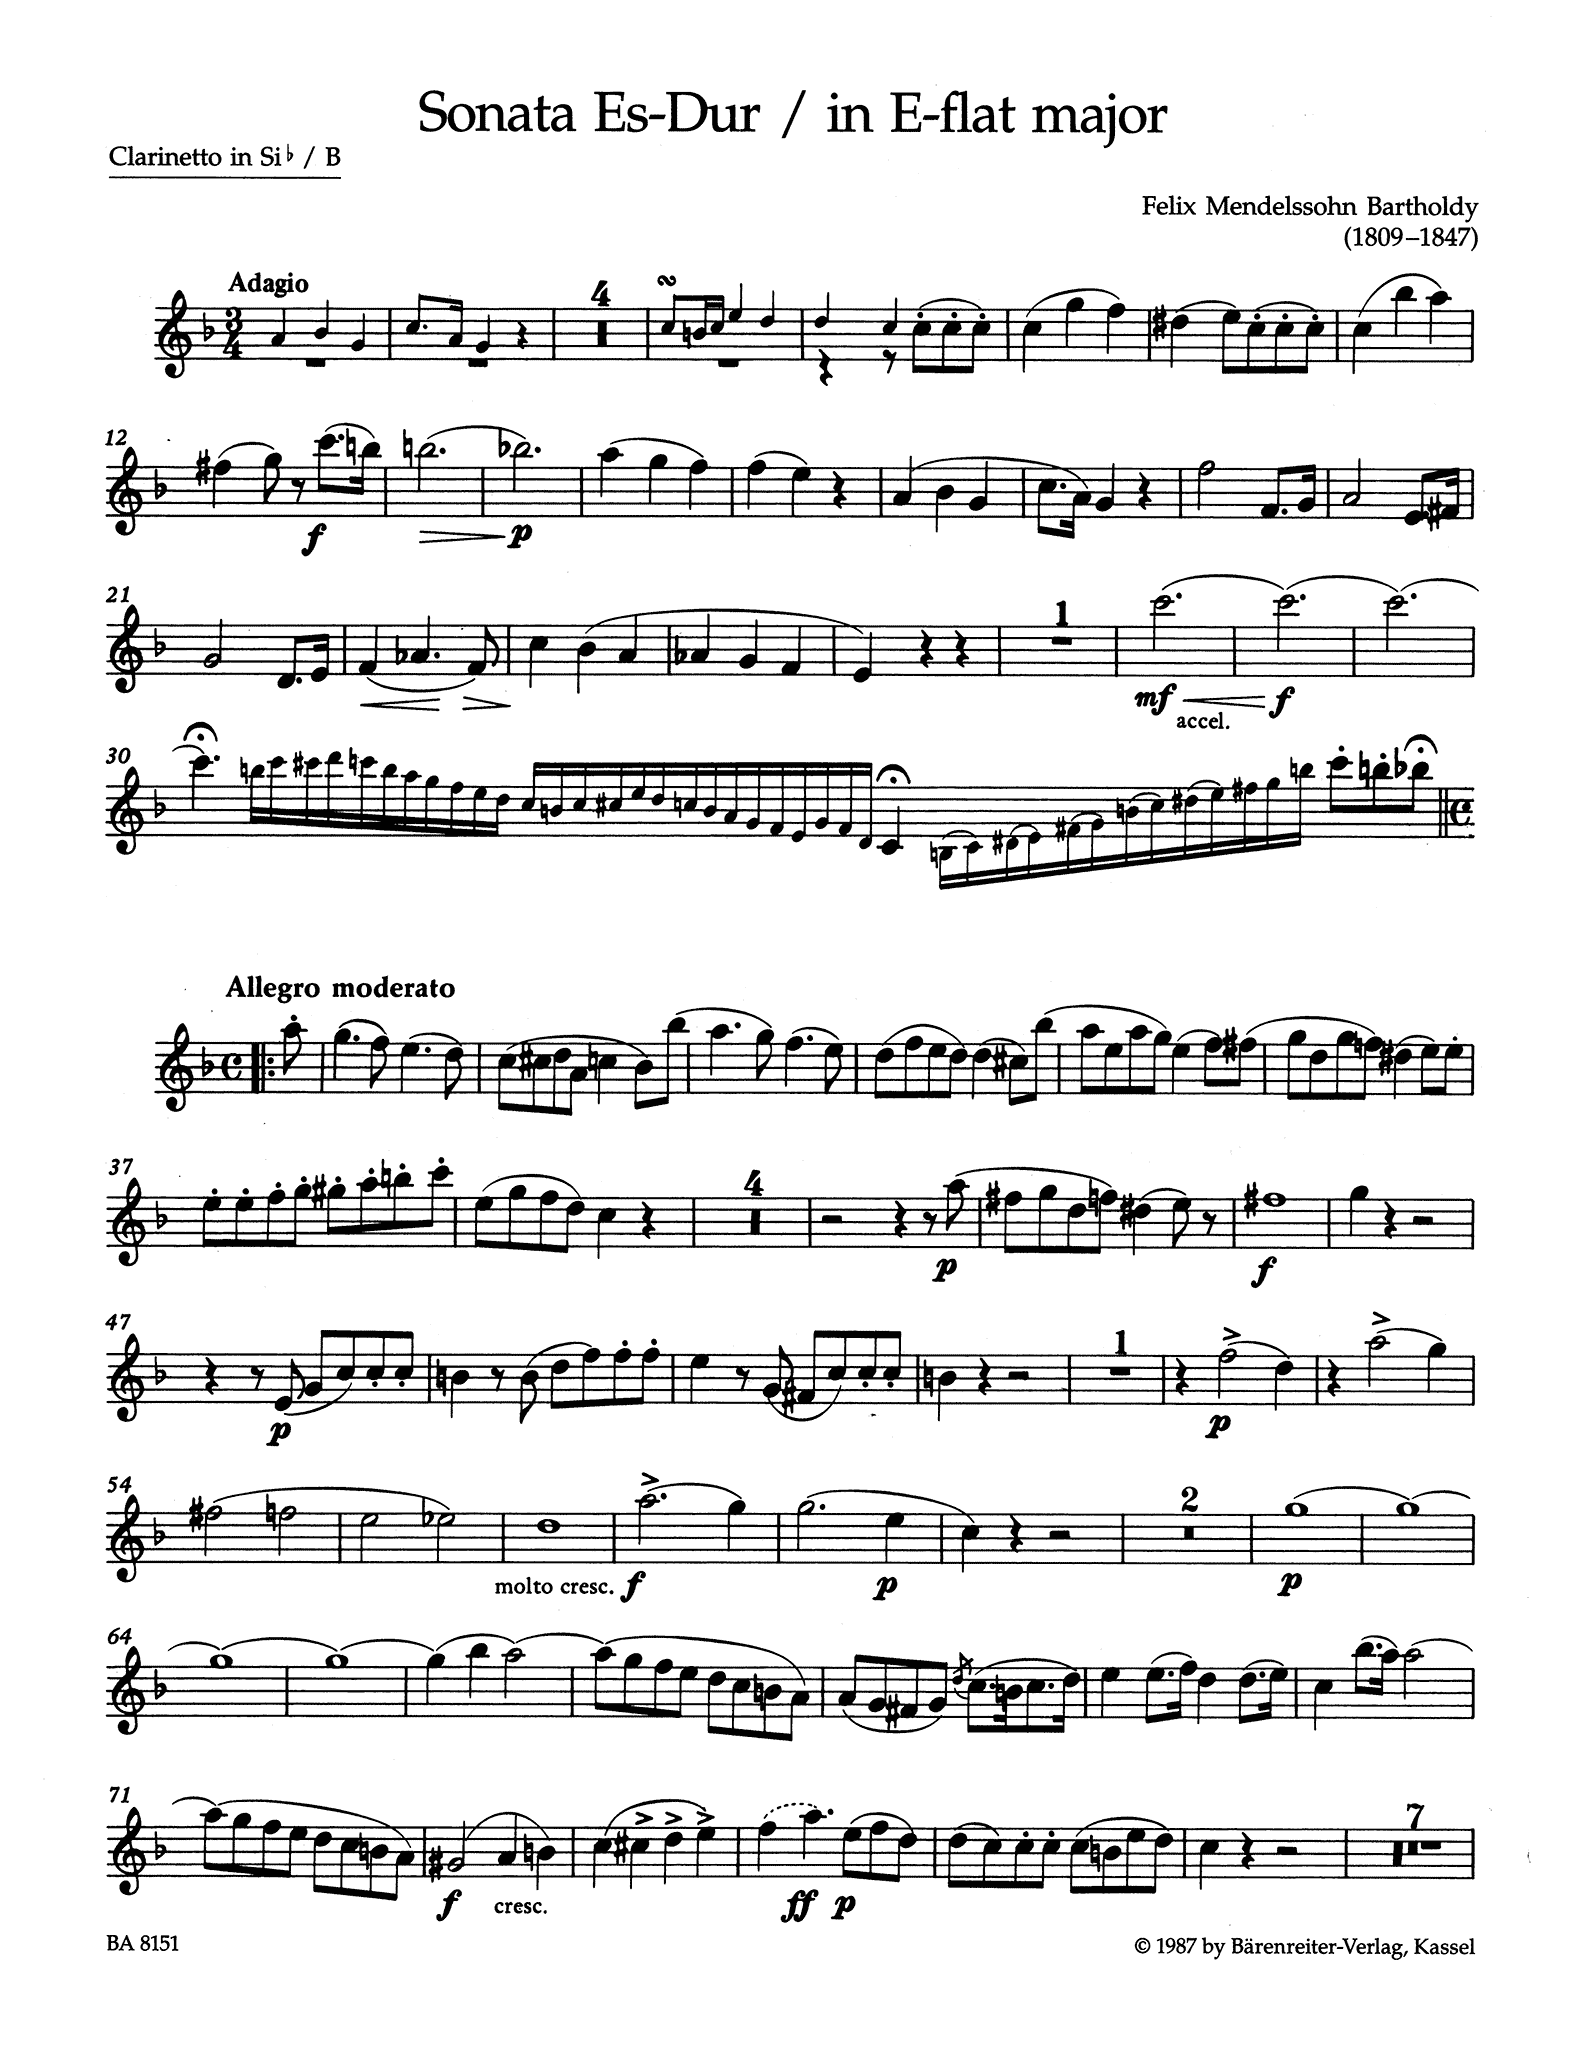 Sonata in E-flat Major for Clarinet & Piano Clarinet part